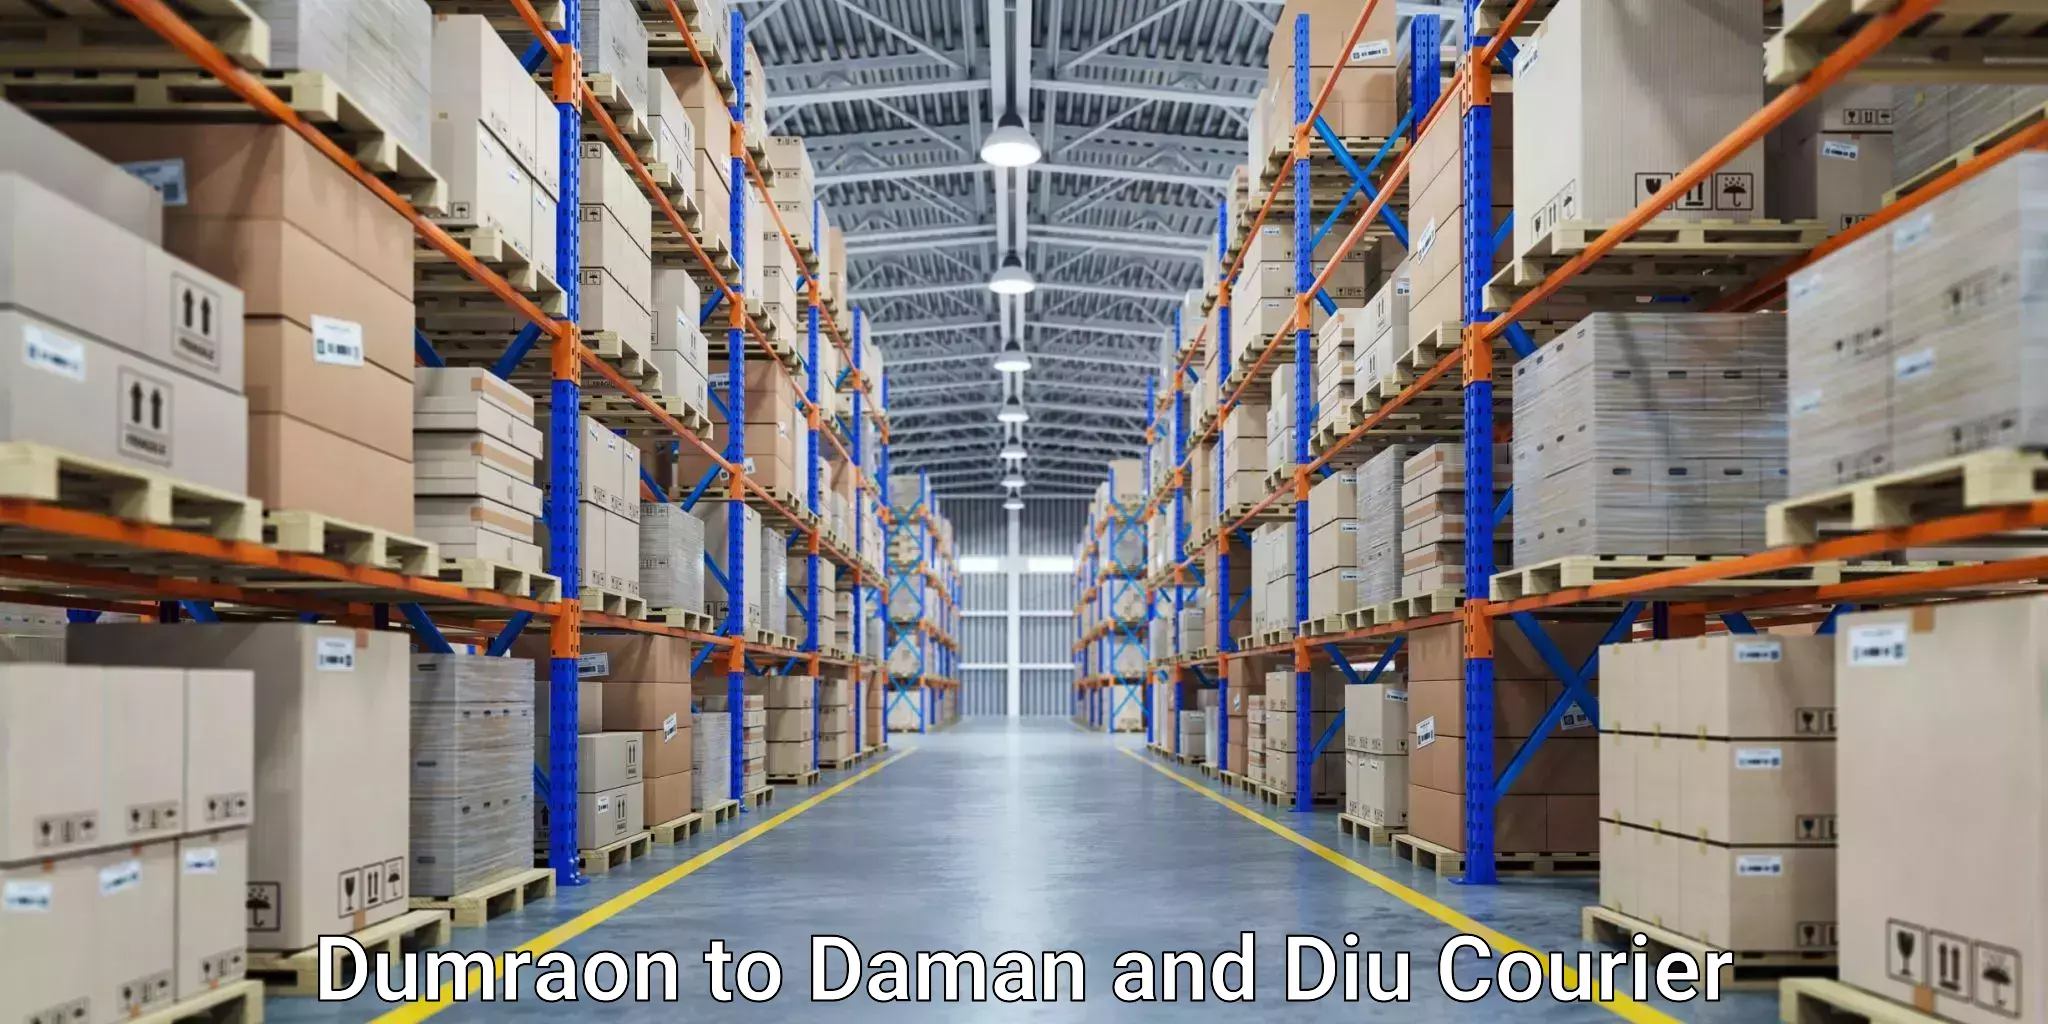 Express package handling Dumraon to Daman and Diu